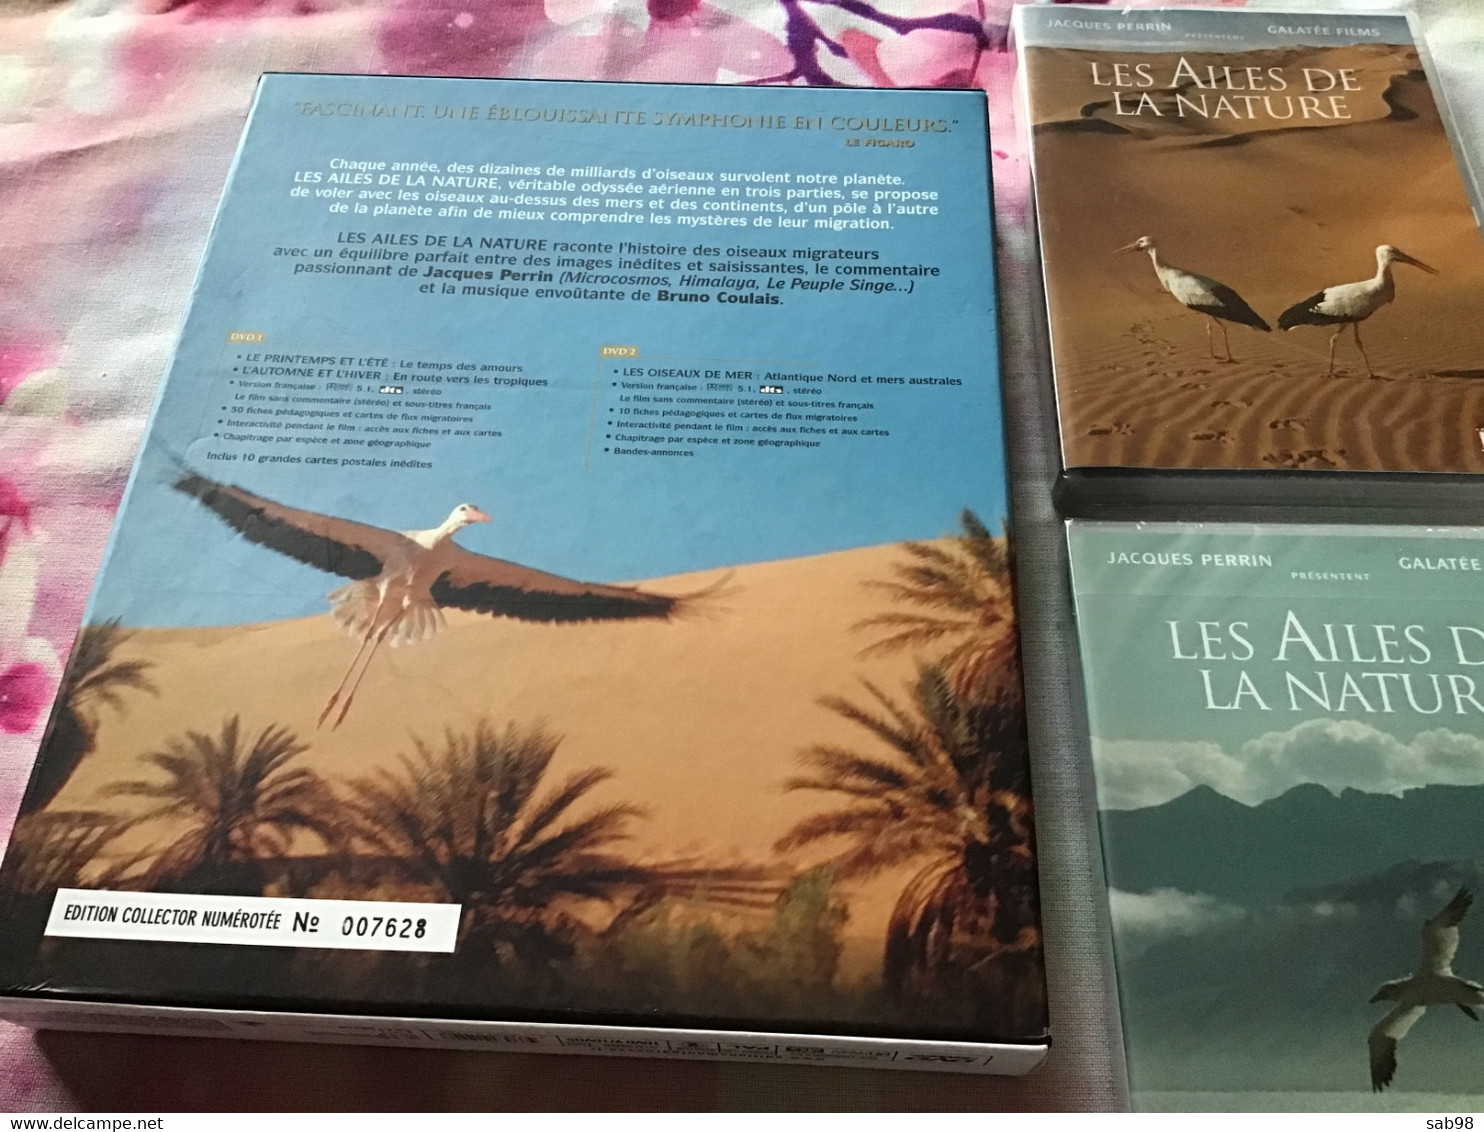 Ornithologie Oiseaux 2 DVD Et 10 Photos Coffret Collector Et Numéroté Les Ailes De La Nature - Documentary